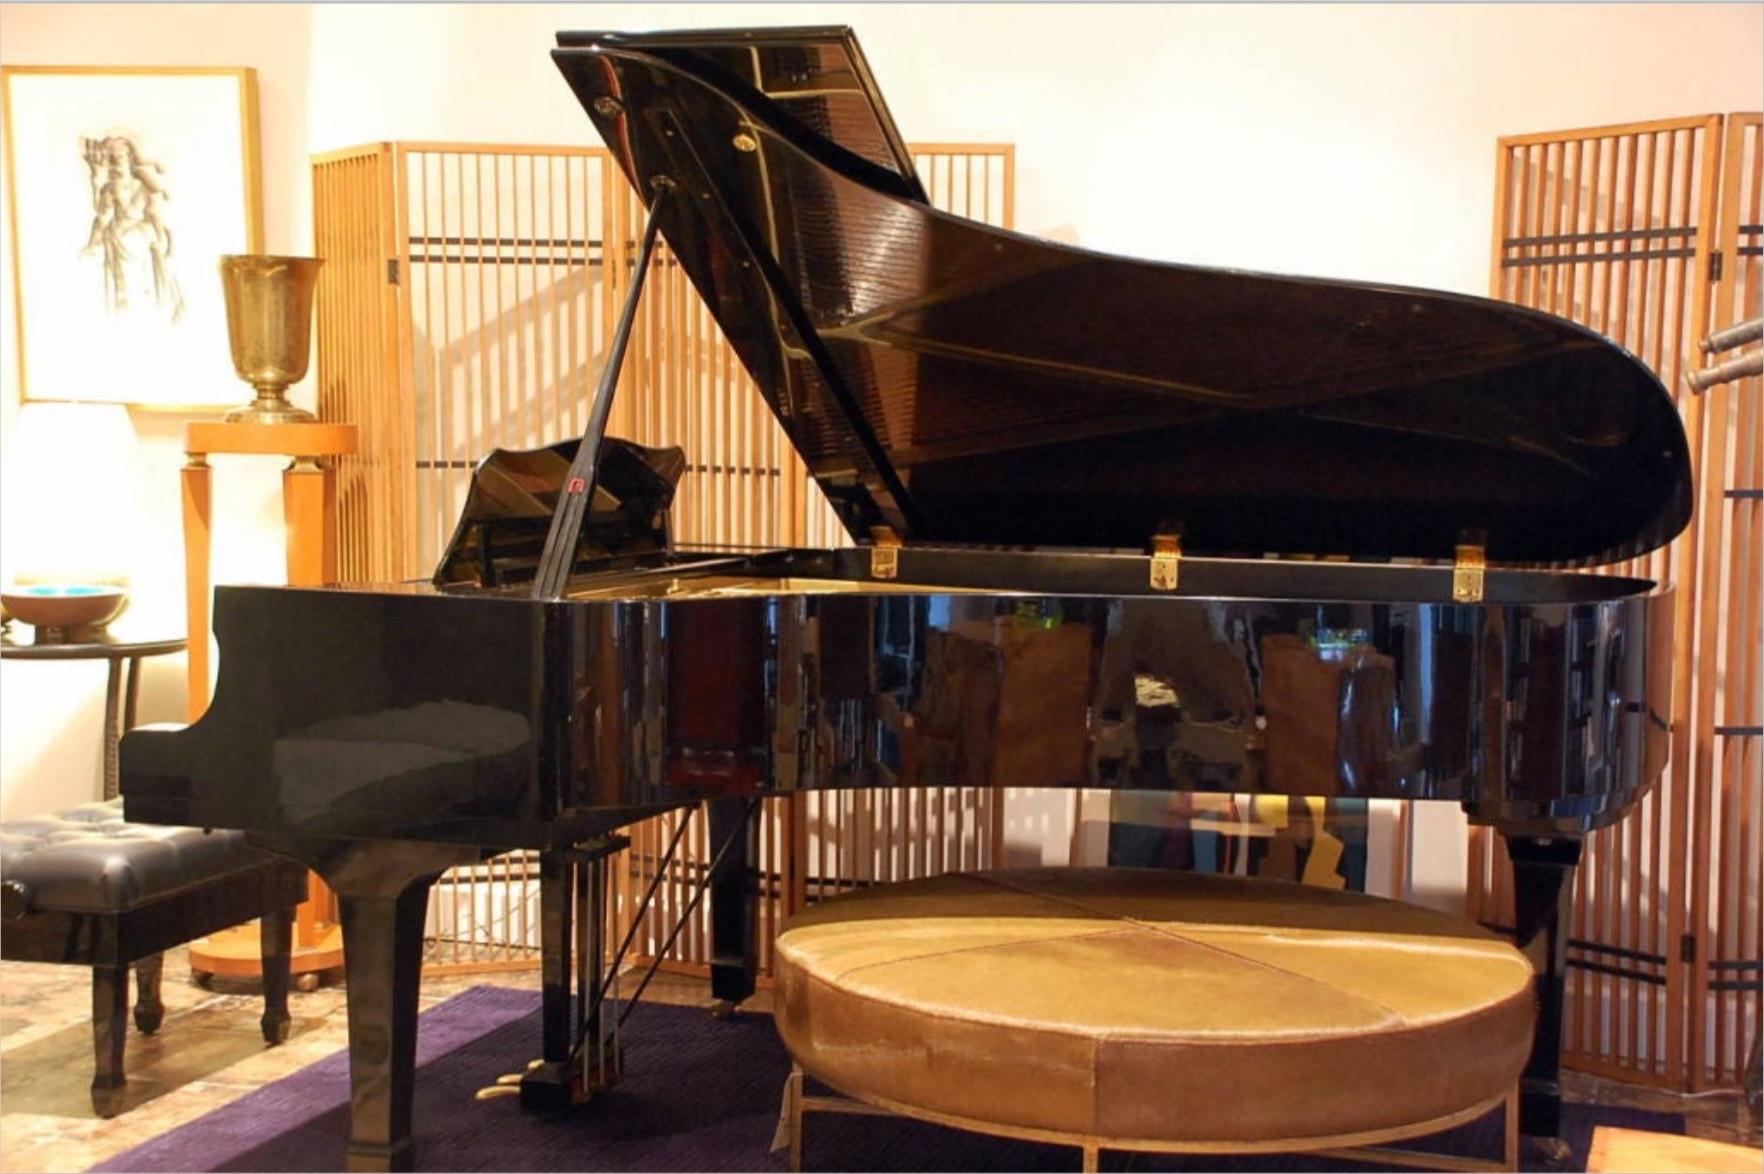 Piano à queue de concert Yamaha C7 laqué noir. Numéro de série Yamaha 2442423.

L'élite des pianos à queue Yamaha de la série C a toujours été reconnue pour la pureté et la richesse de leur tonalité, ainsi que pour leur exceptionnelle gamme